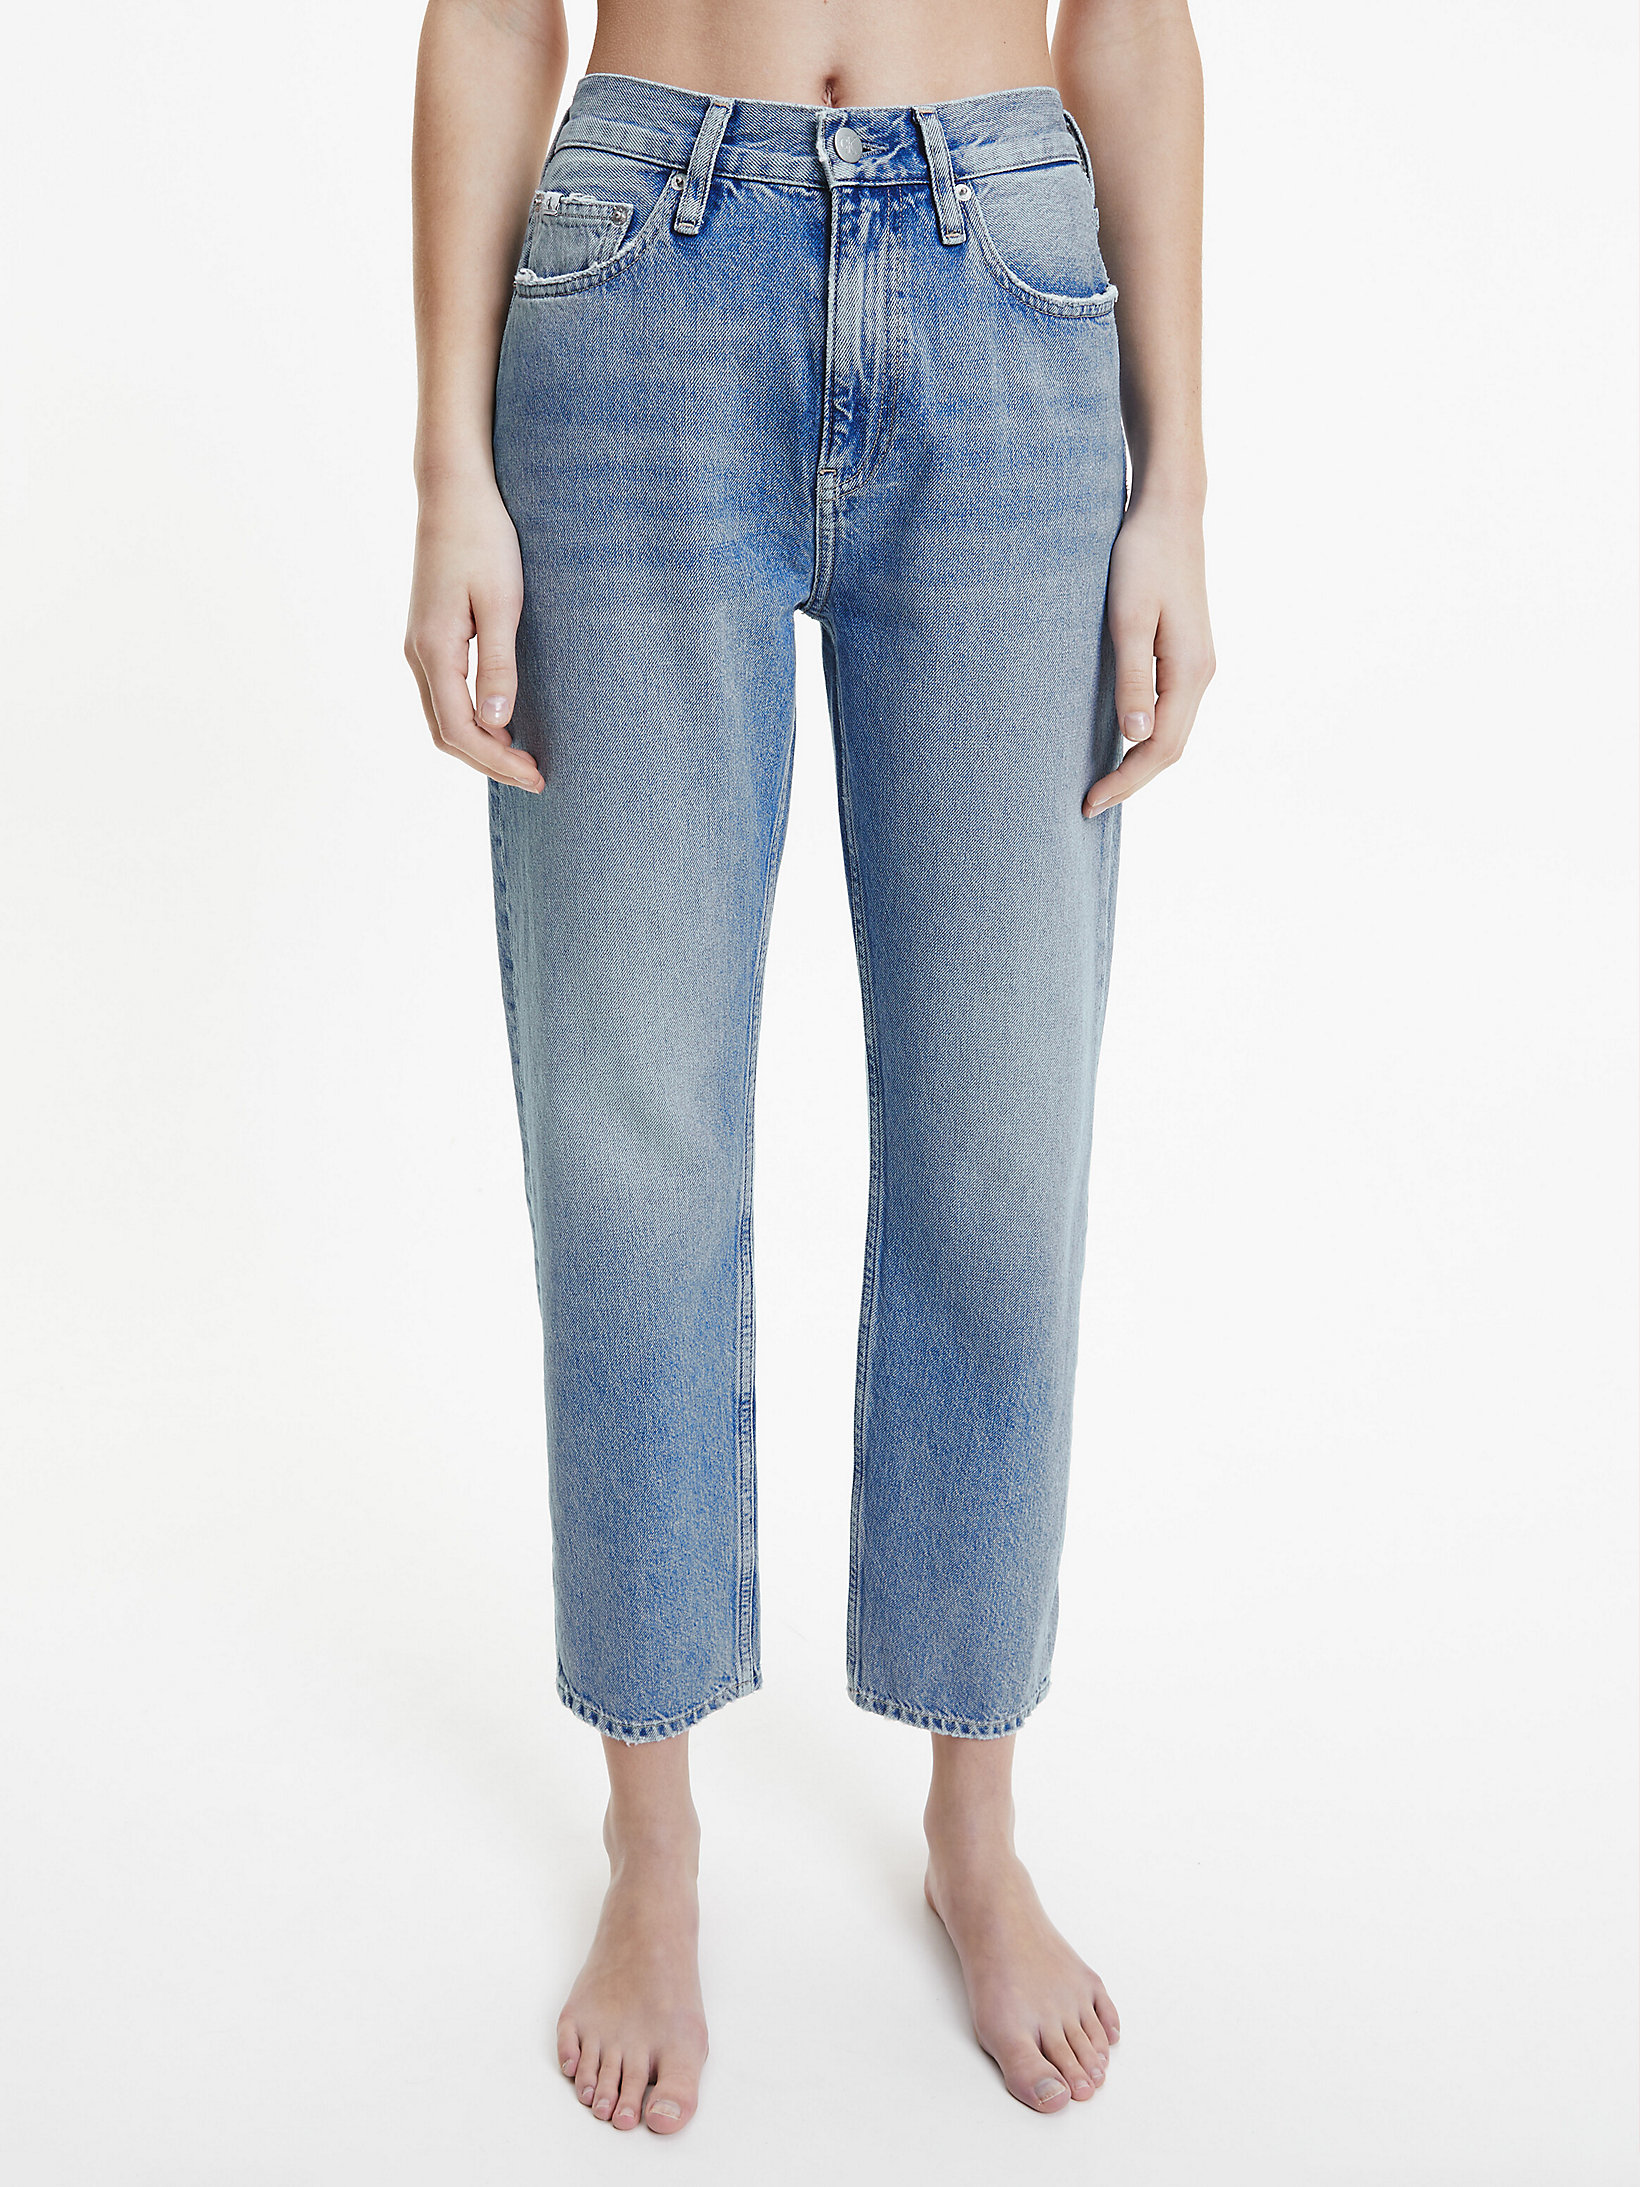 Jeans High Rise Straight Tobilleros > Denim Medium > undefined mujer > Calvin Klein